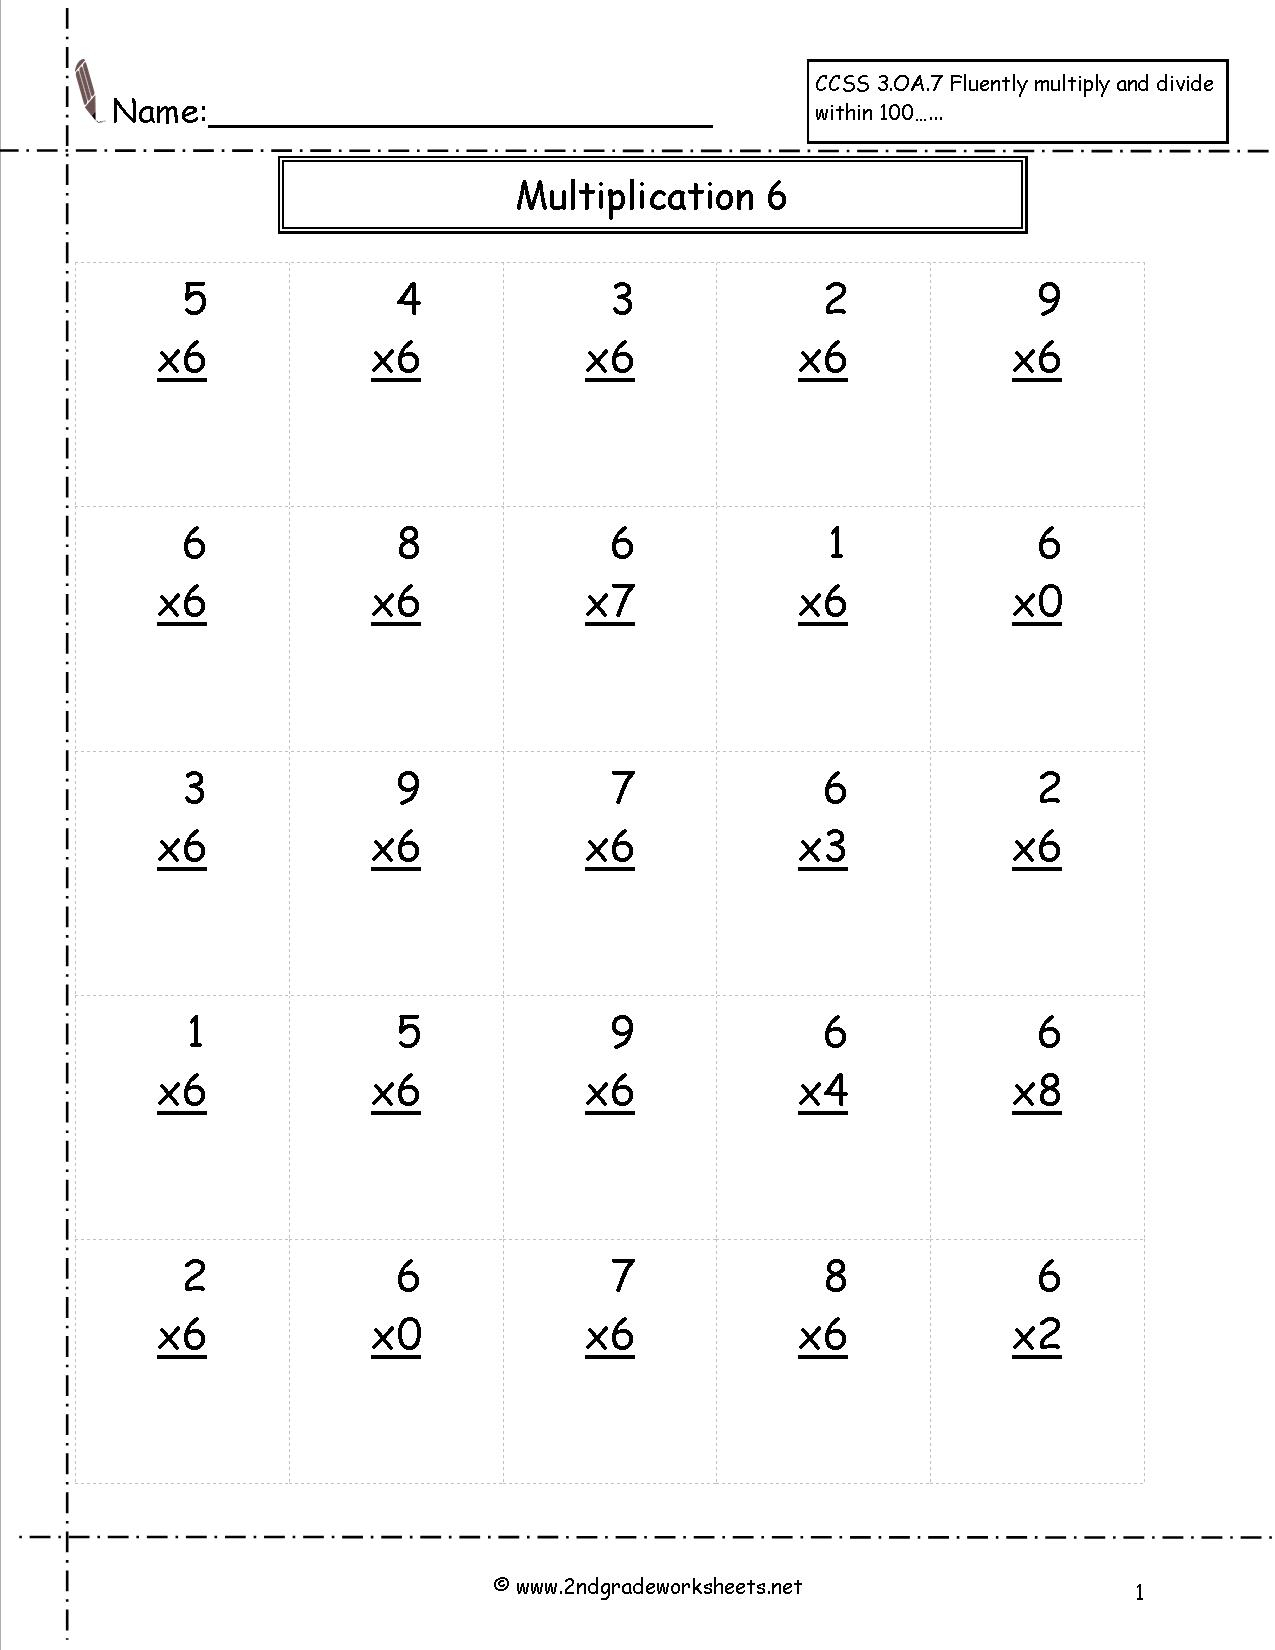  Multiplication Worksheets K5 Learning Printable Multiplication Flash Cards